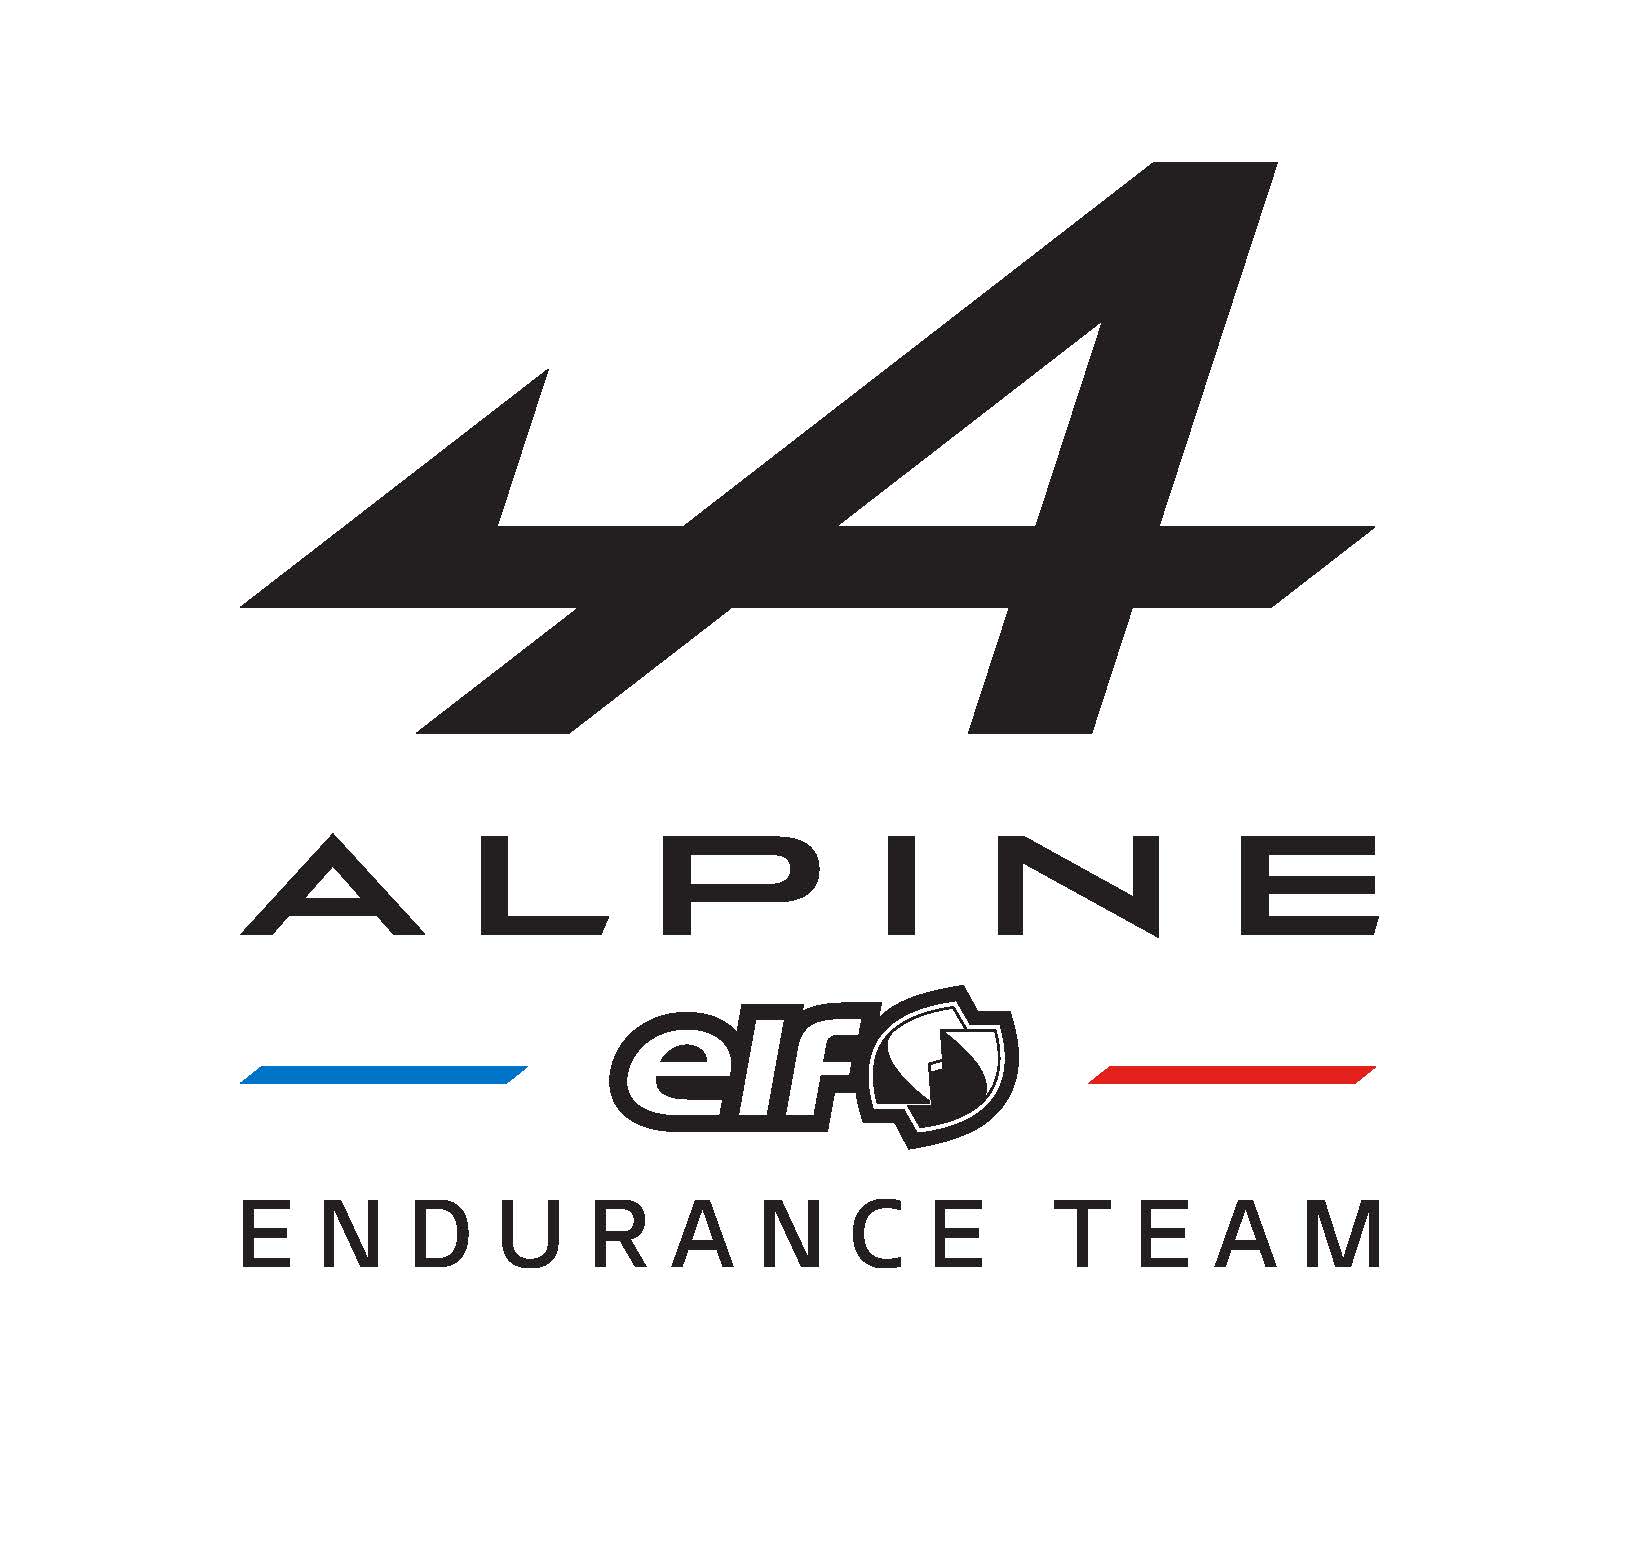 파일:alpine-elf-endurance-team-logo.jpg